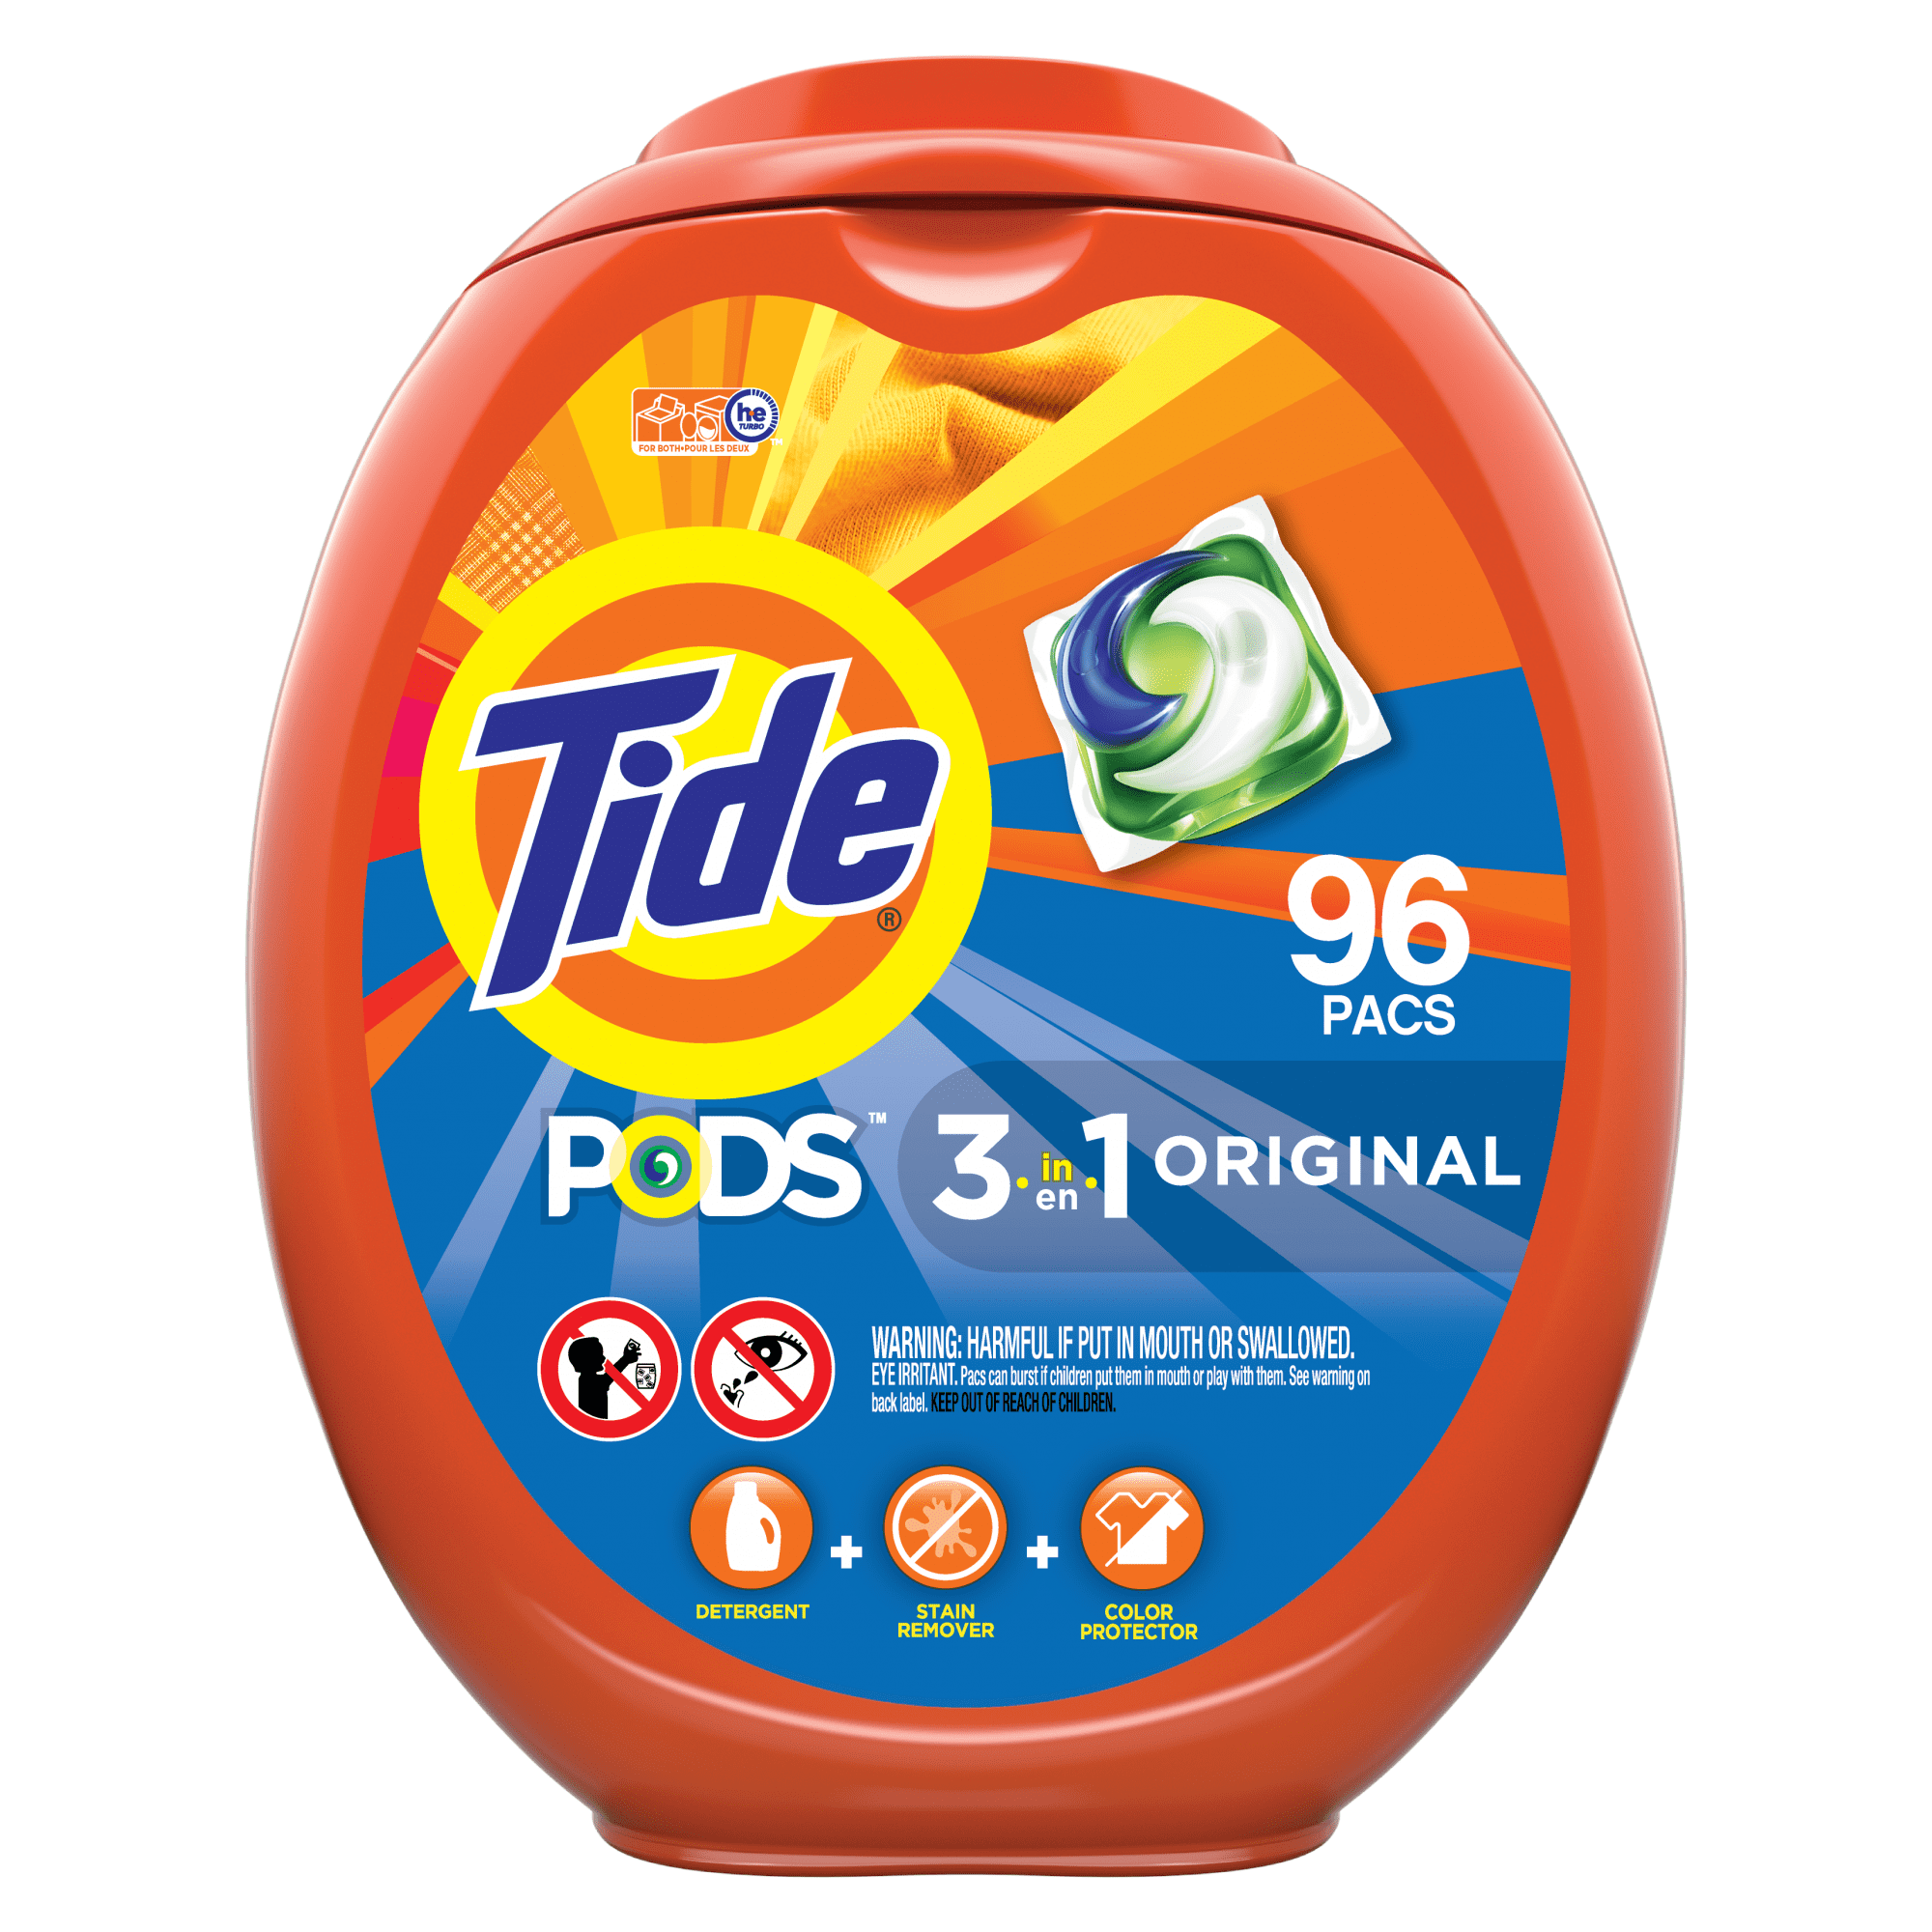 travel size detergent pods